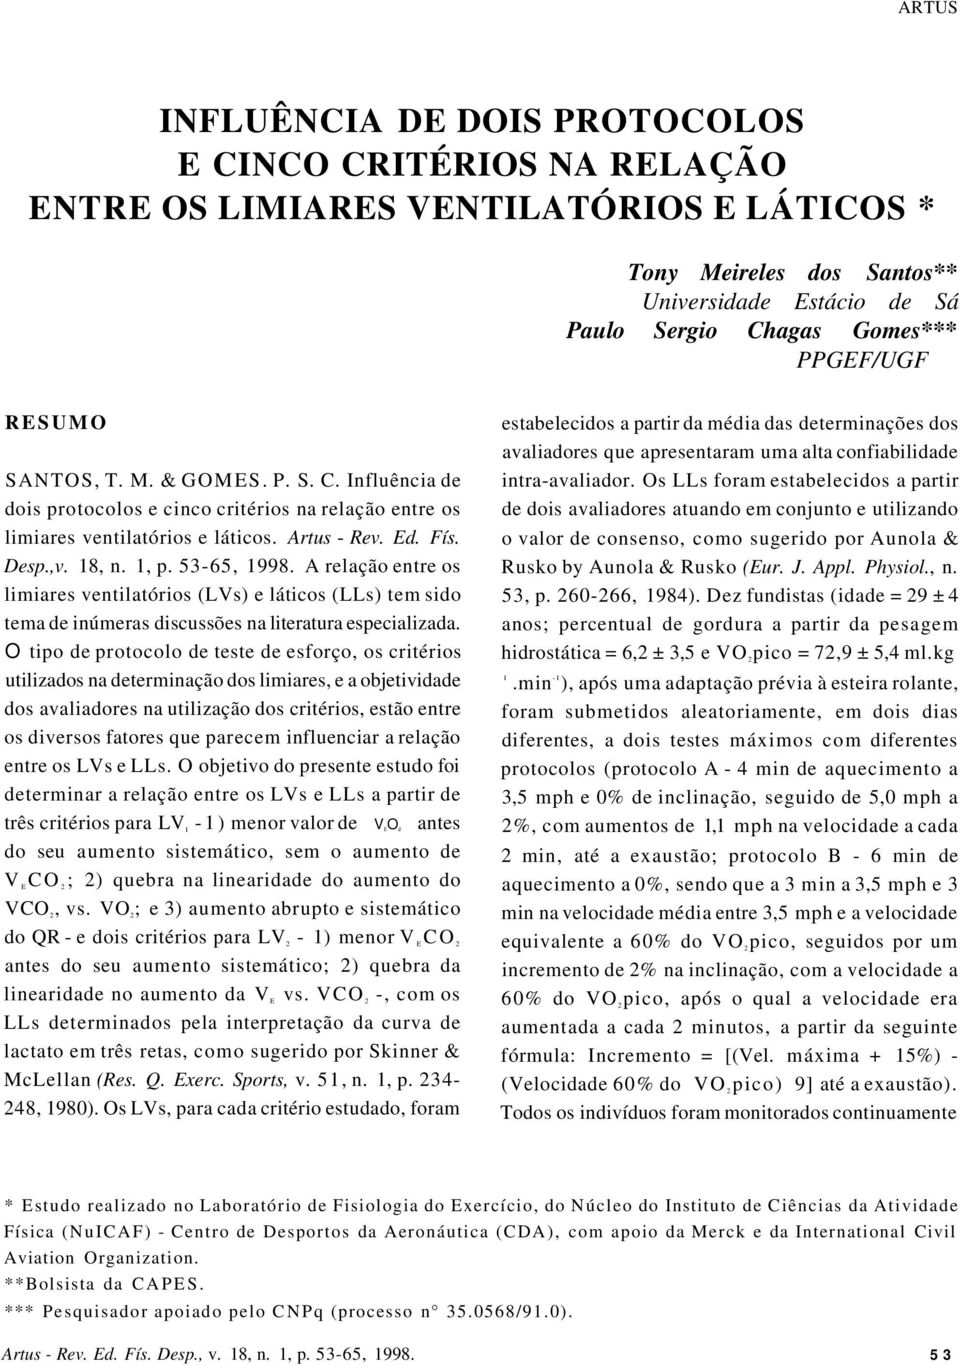 A relação entre os limiares ventilatórios (LVs) e láticos (LLs) tem sido tema de inúmeras discussões na literatura especializada.